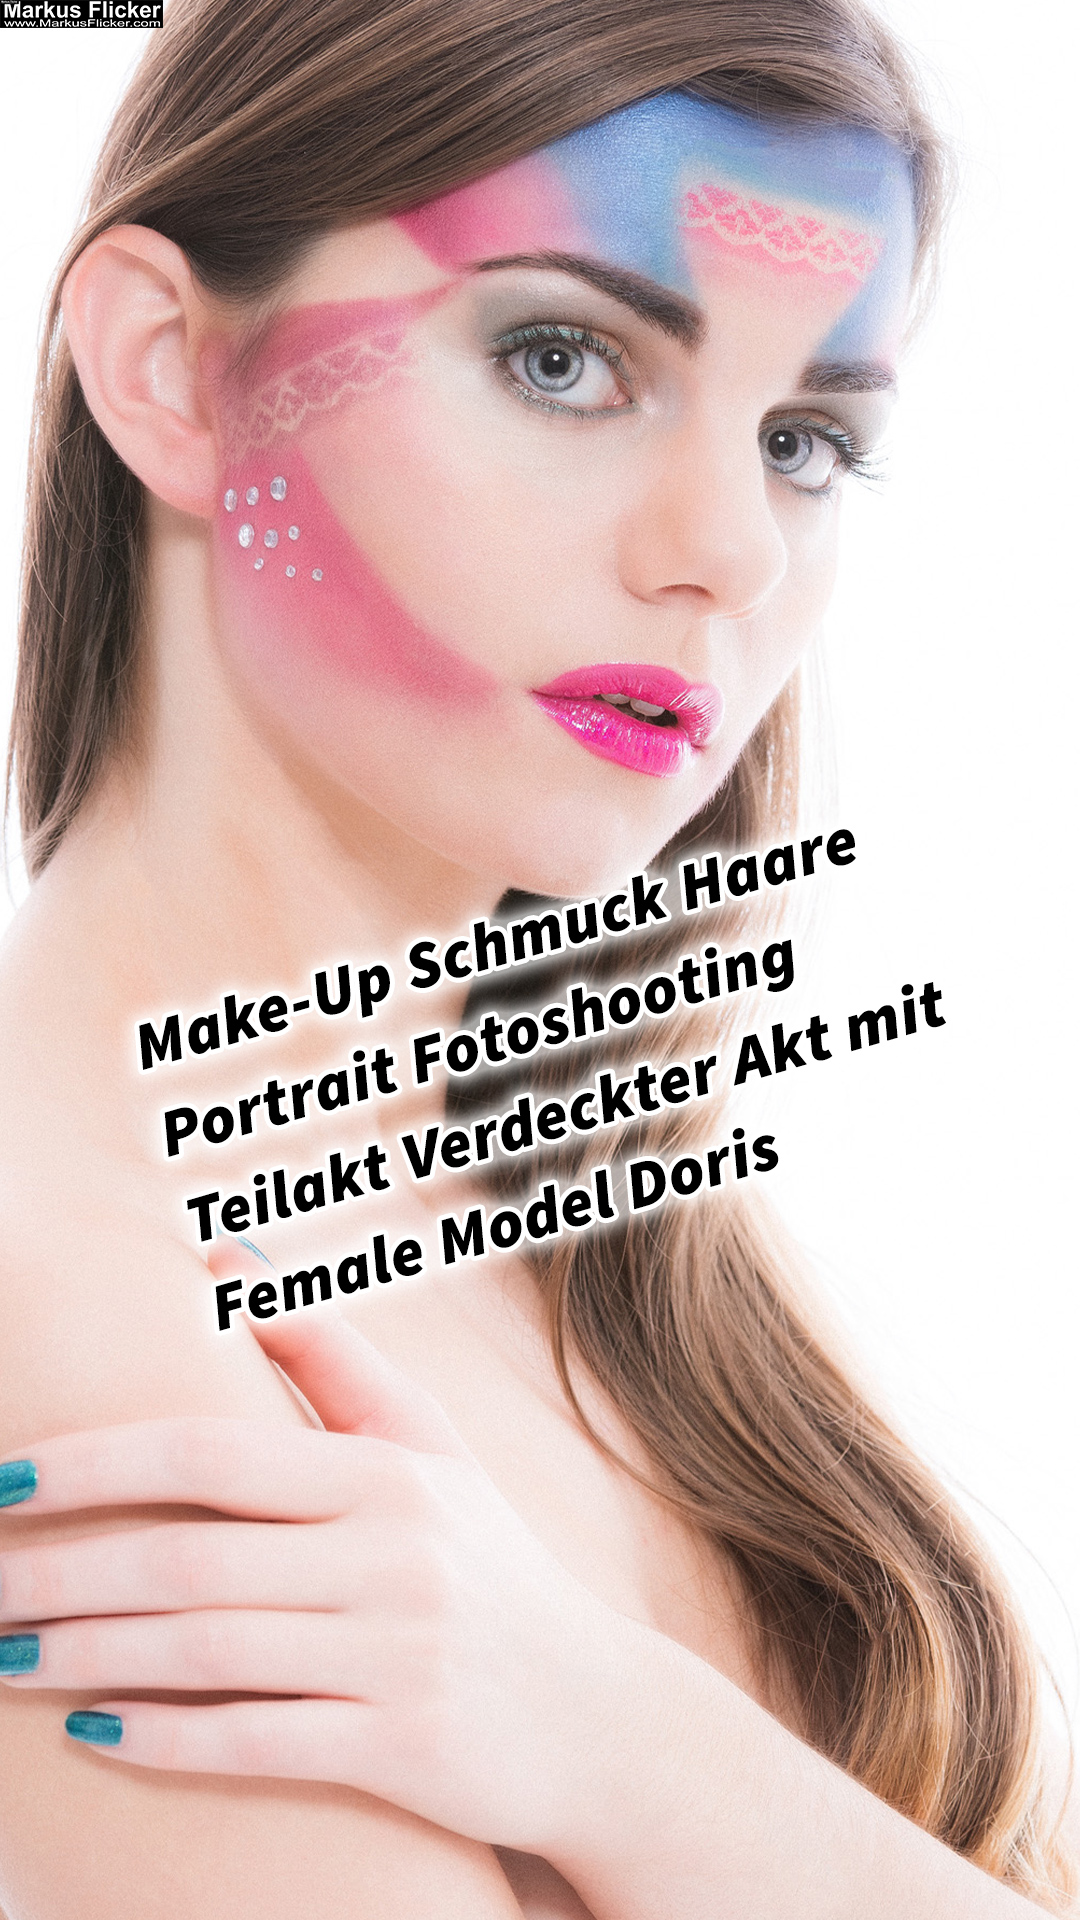 Make-Up Schmuck Haare Portrait Fotoshooting Teilakt Verdeckter Akt mit Female Model Doris